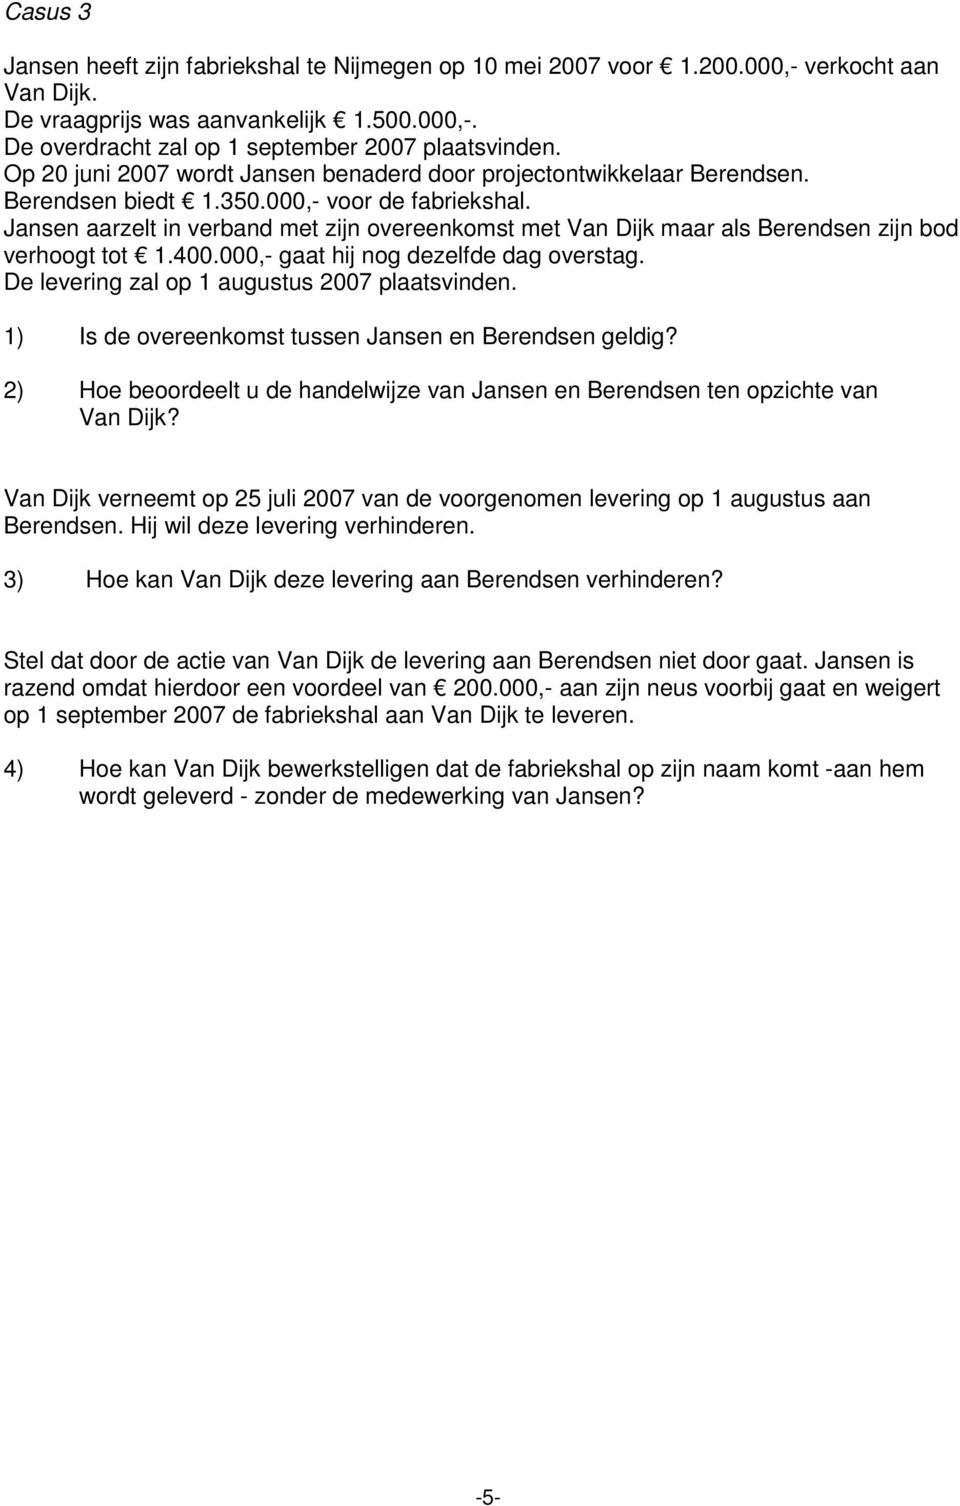 Jansen aarzelt in verband met zijn overeenkomst met Van Dijk maar als Berendsen zijn bod verhoogt tot 1.400.000,- gaat hij nog dezelfde dag overstag. De levering zal op 1 augustus 2007 plaatsvinden.